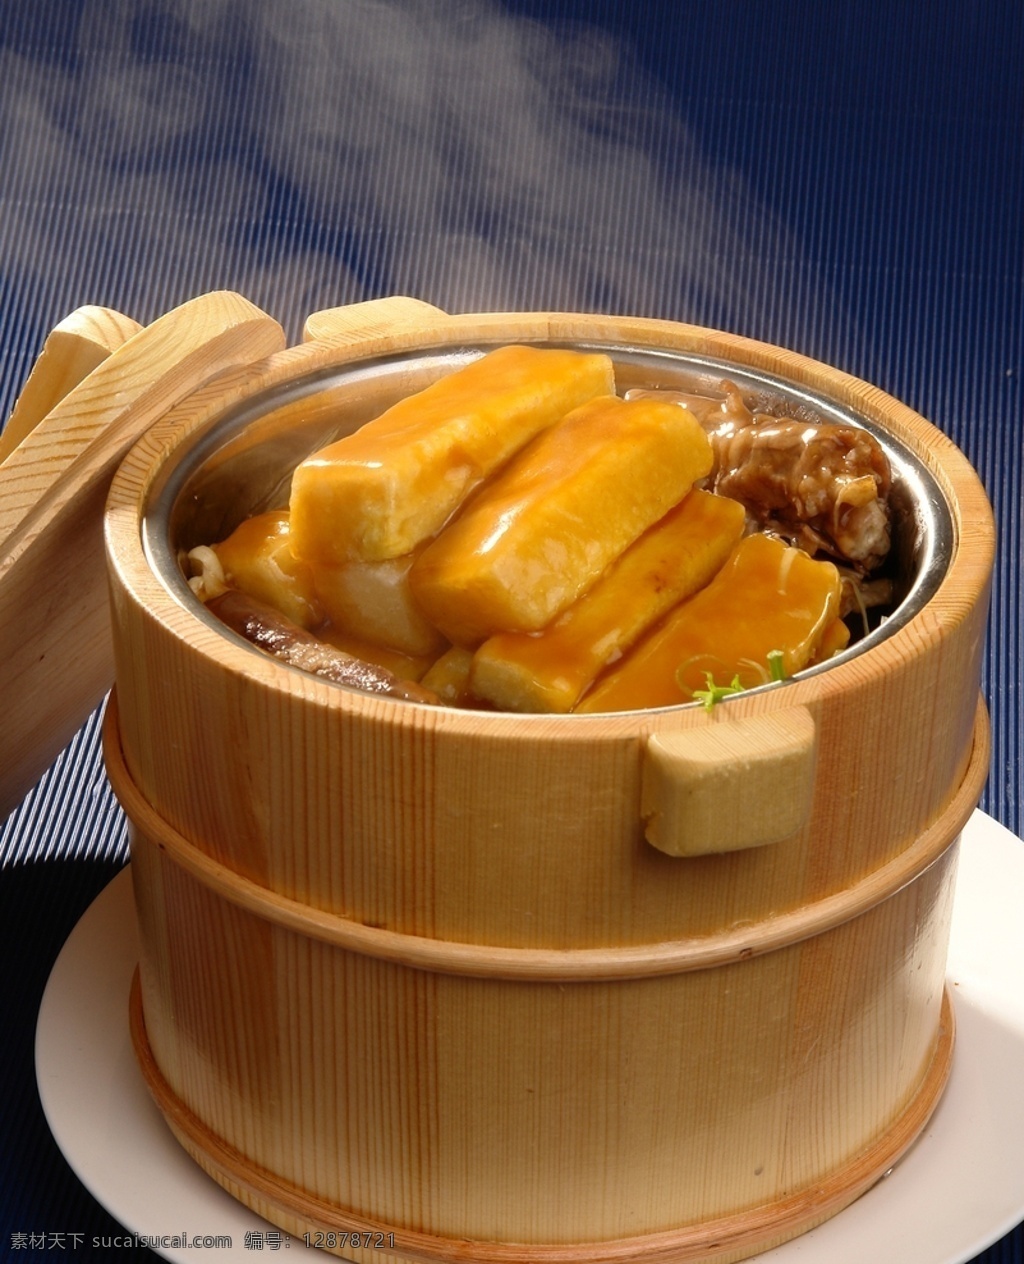 自制一桶豆腐 一桶自制豆腐 美食 桶 木桶 自制 豆腐 菜品图 餐饮美食 传统美食